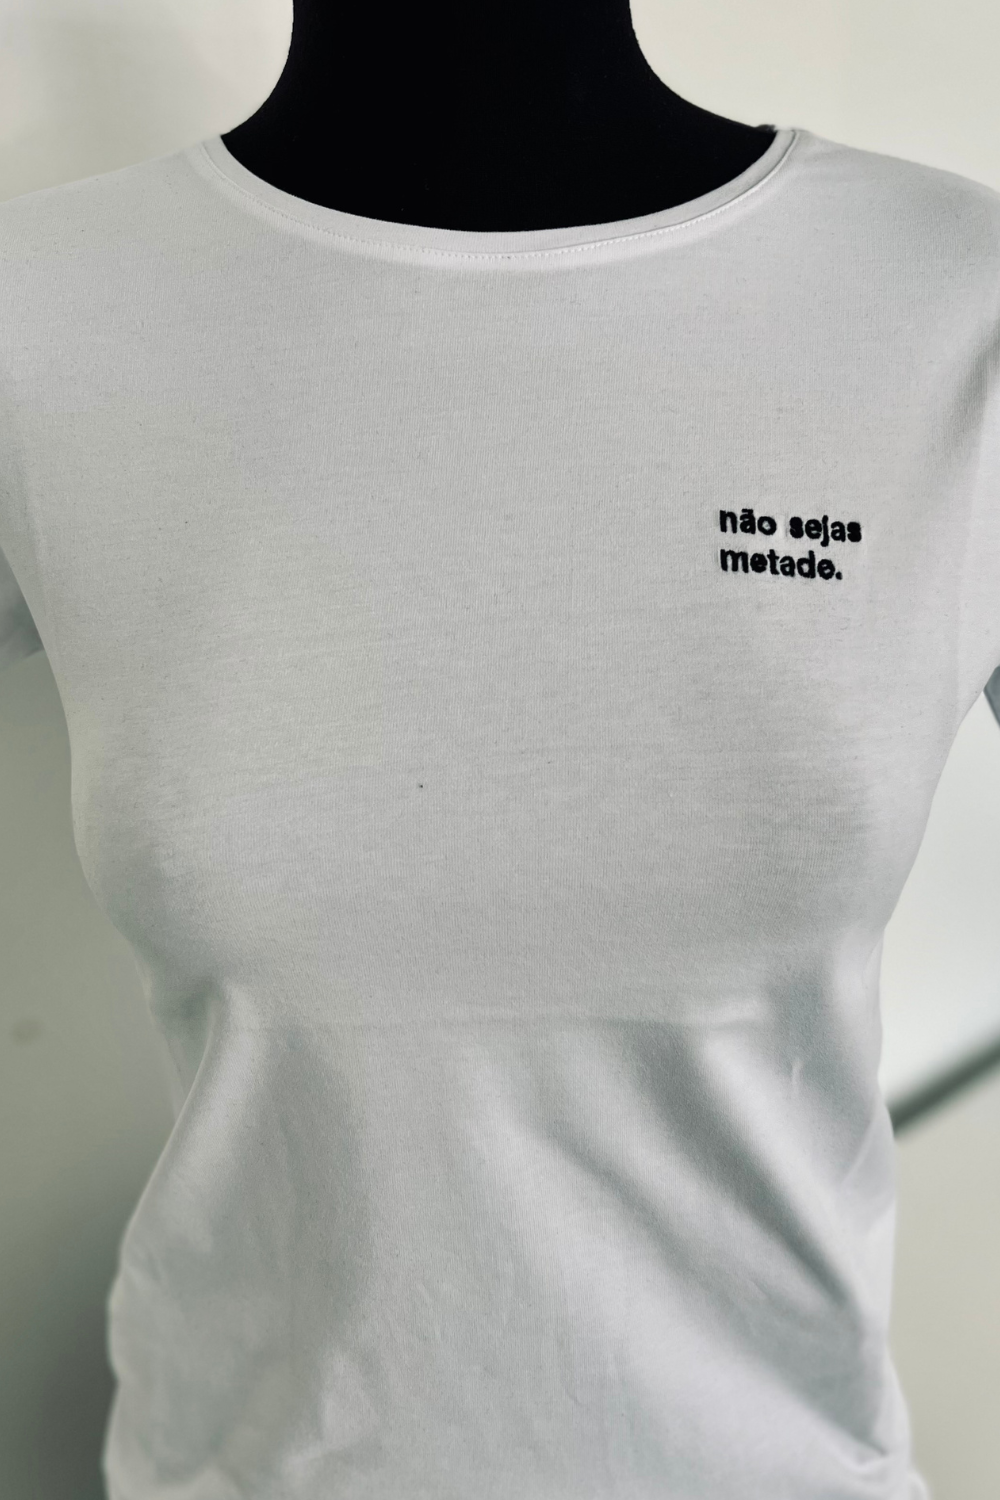 T-shirt -  Não sejas metade